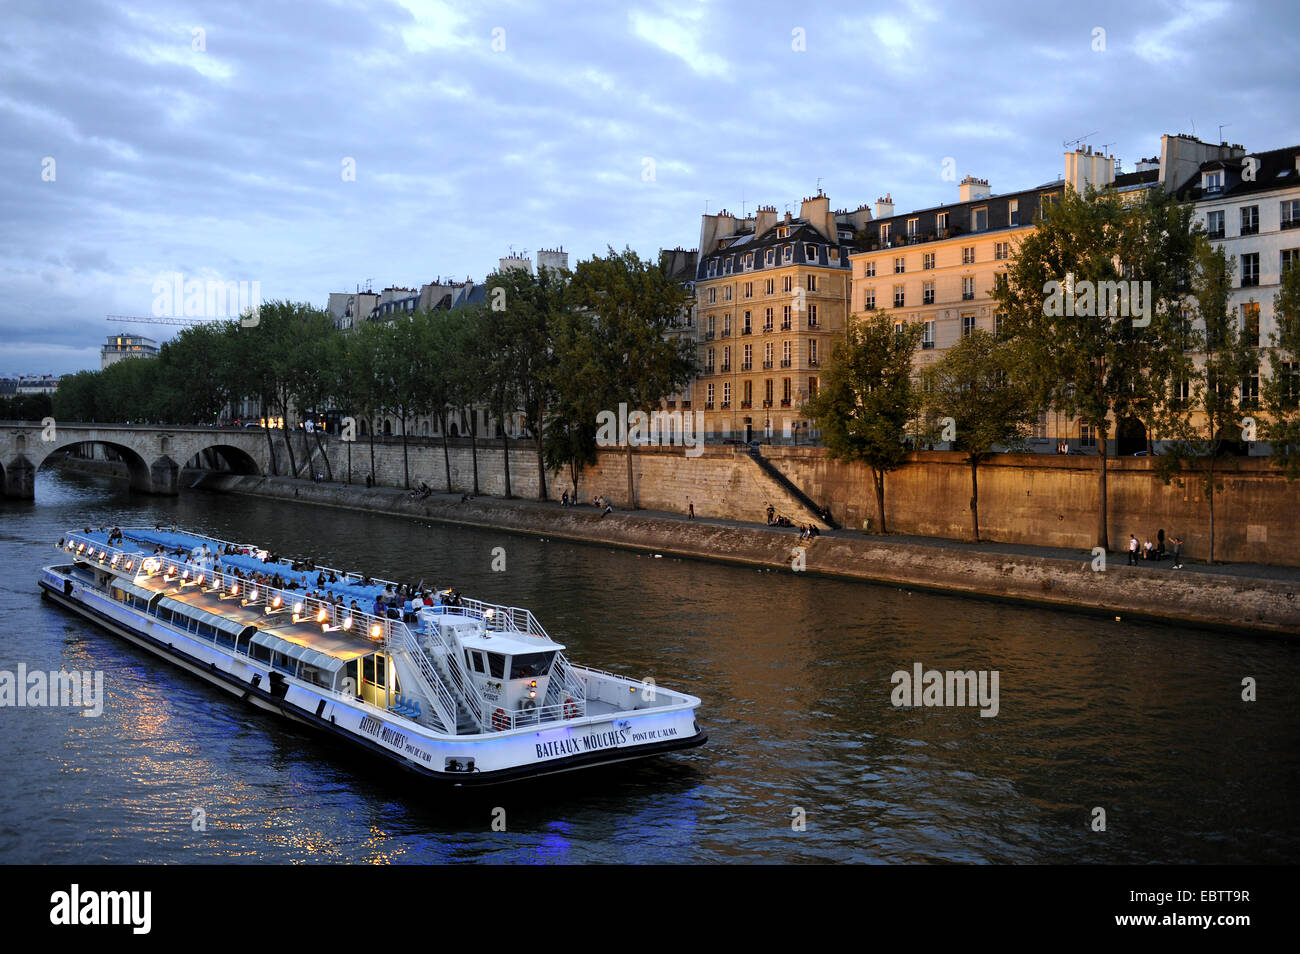 Bateaux Mouche, Ausflugsschiff am Fluss Seine, France, Paris Stockfoto